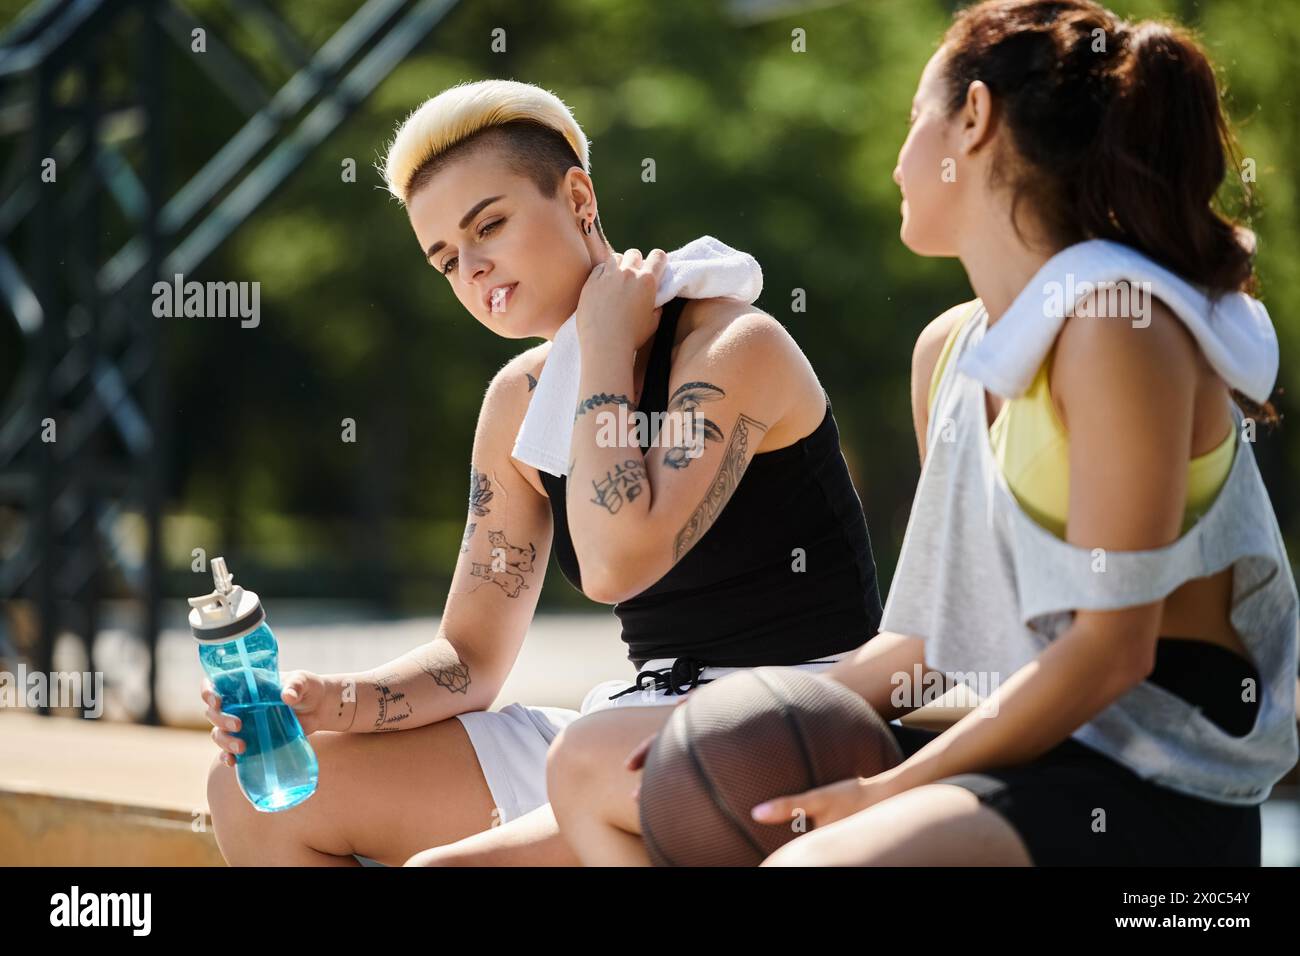 Deux jeunes femmes, athlétiques et animées, profitent d'une partie de basket-ball en plein air par une journée ensoleillée d'été. Banque D'Images